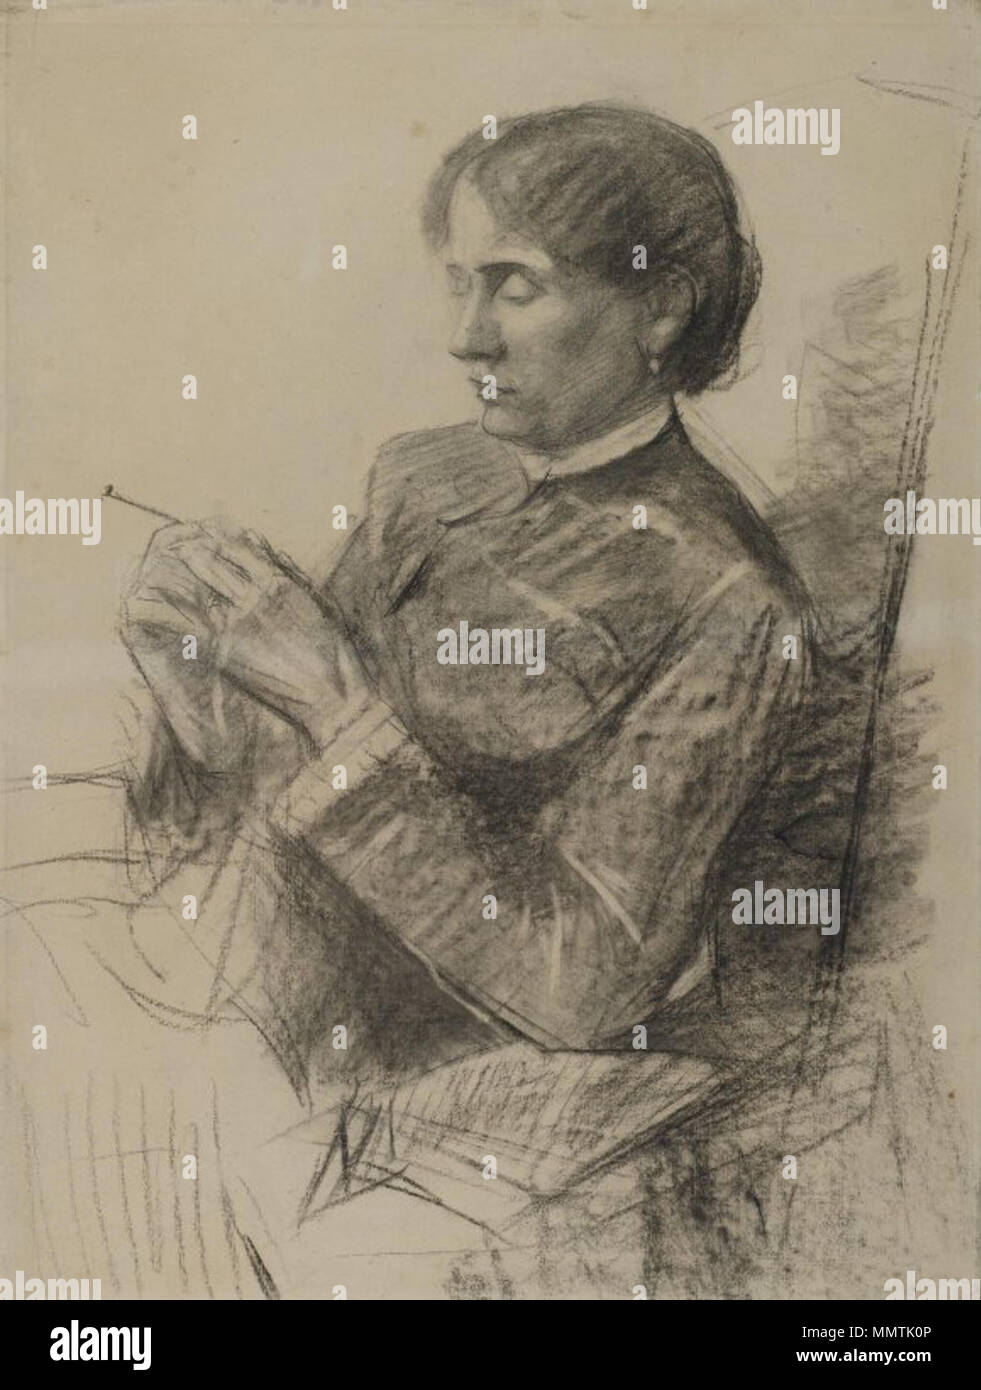 Le Musée de Brooklyn - Portrait de madame la comtesse Adèle de Toulouse-Lautrec - Henri de Toulouse-Lautrec Banque D'Images